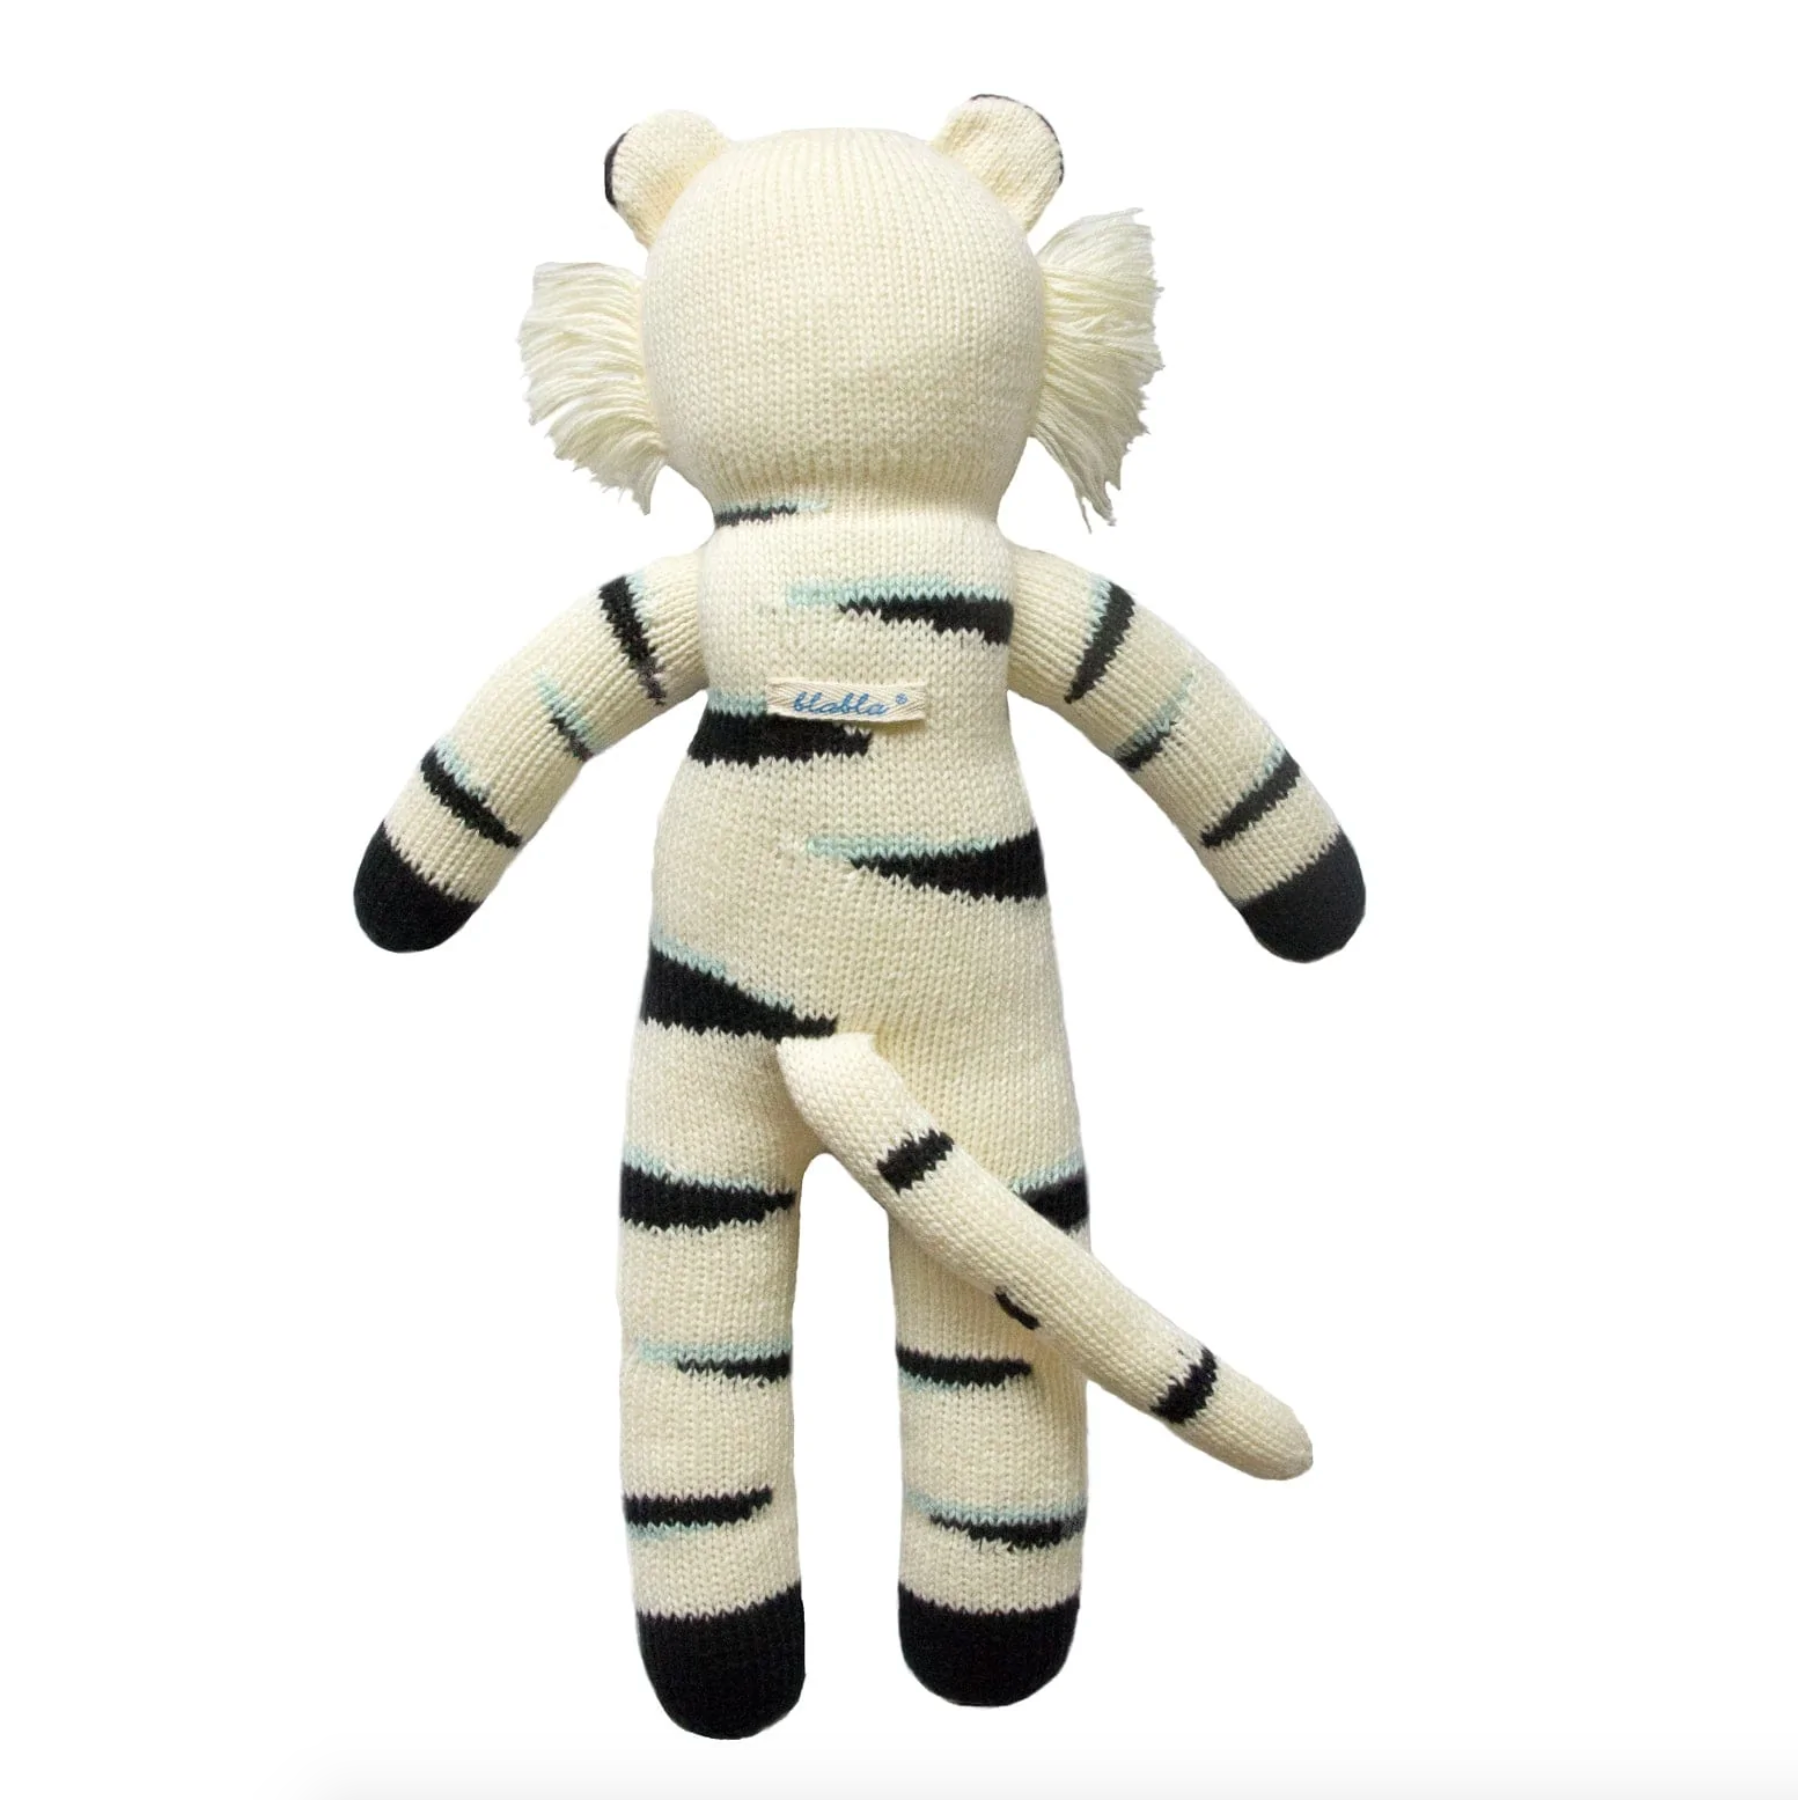 Bla Bla Kids Mini Doll - Zig Zag the Tiger